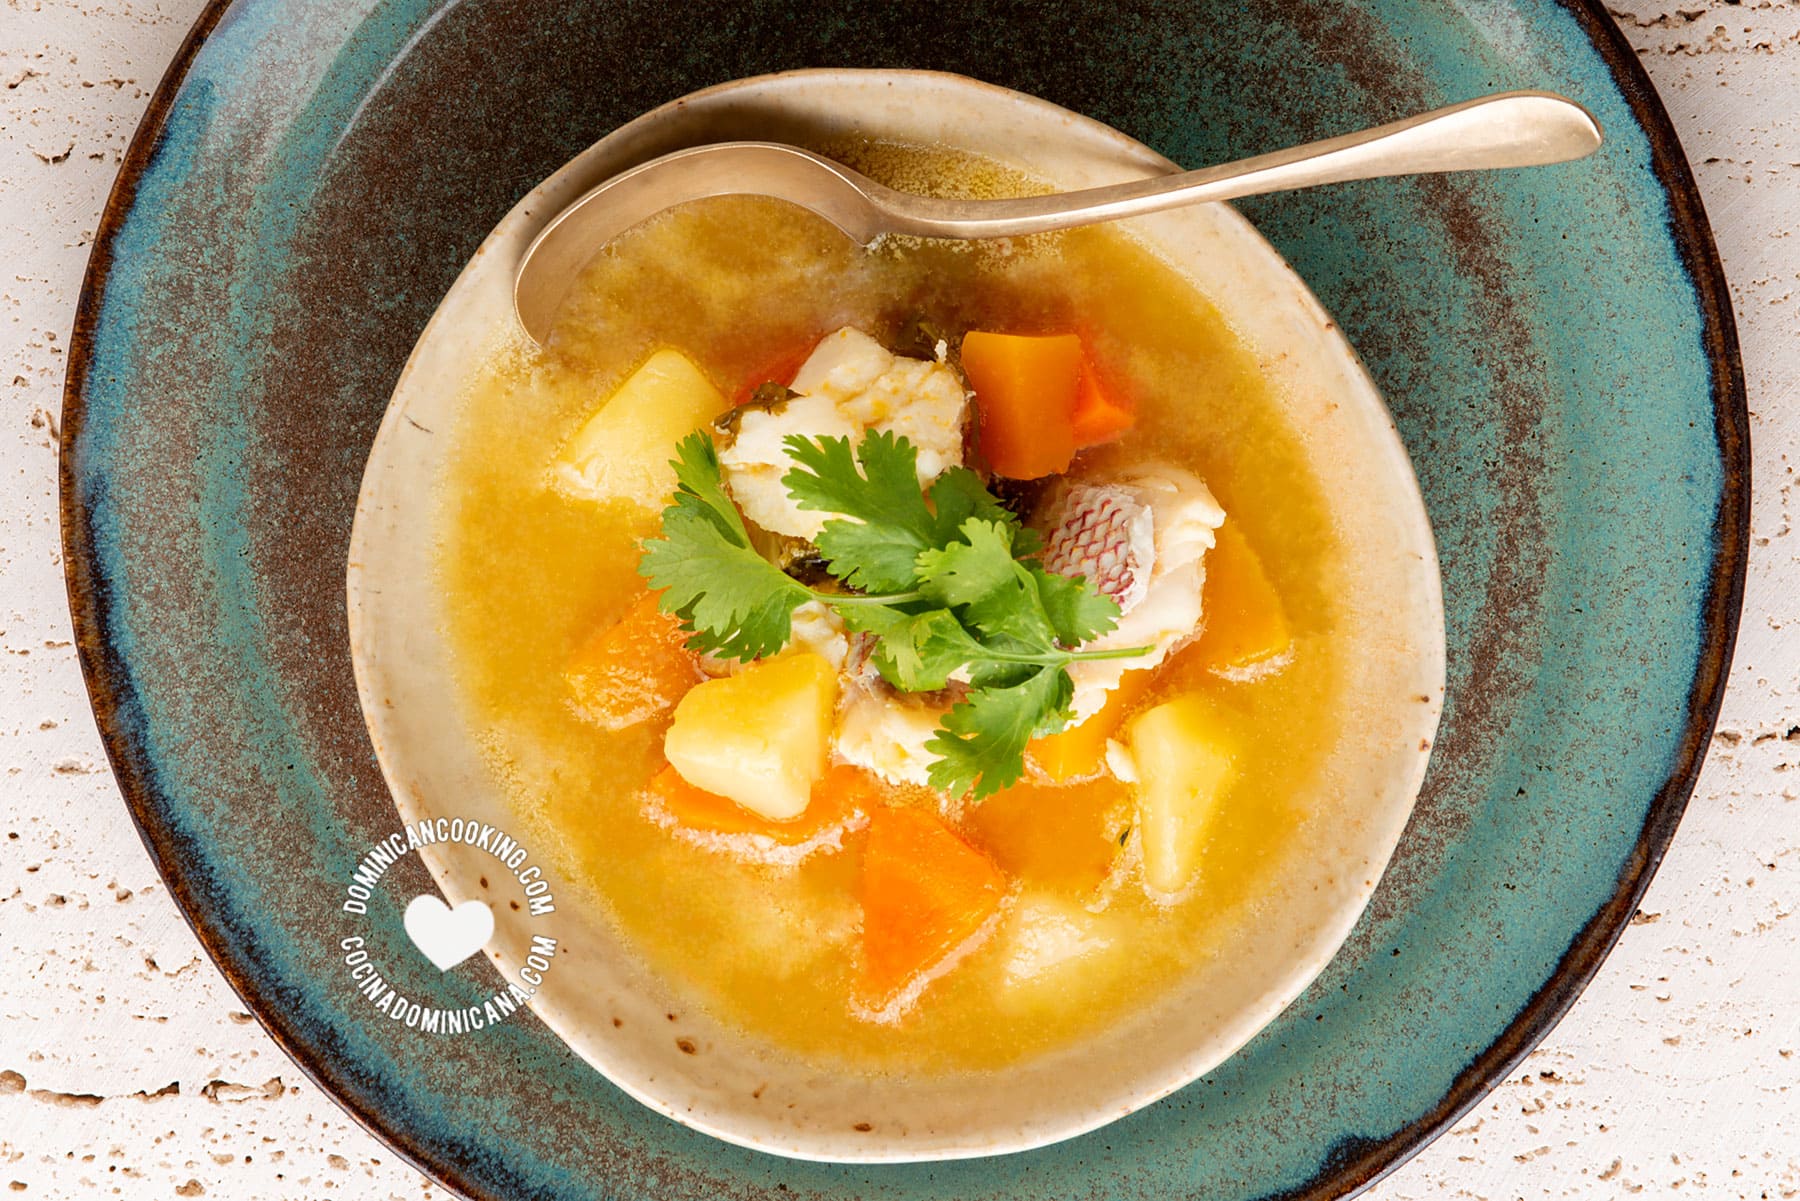 Sopa de Pescado (Fish Soup)